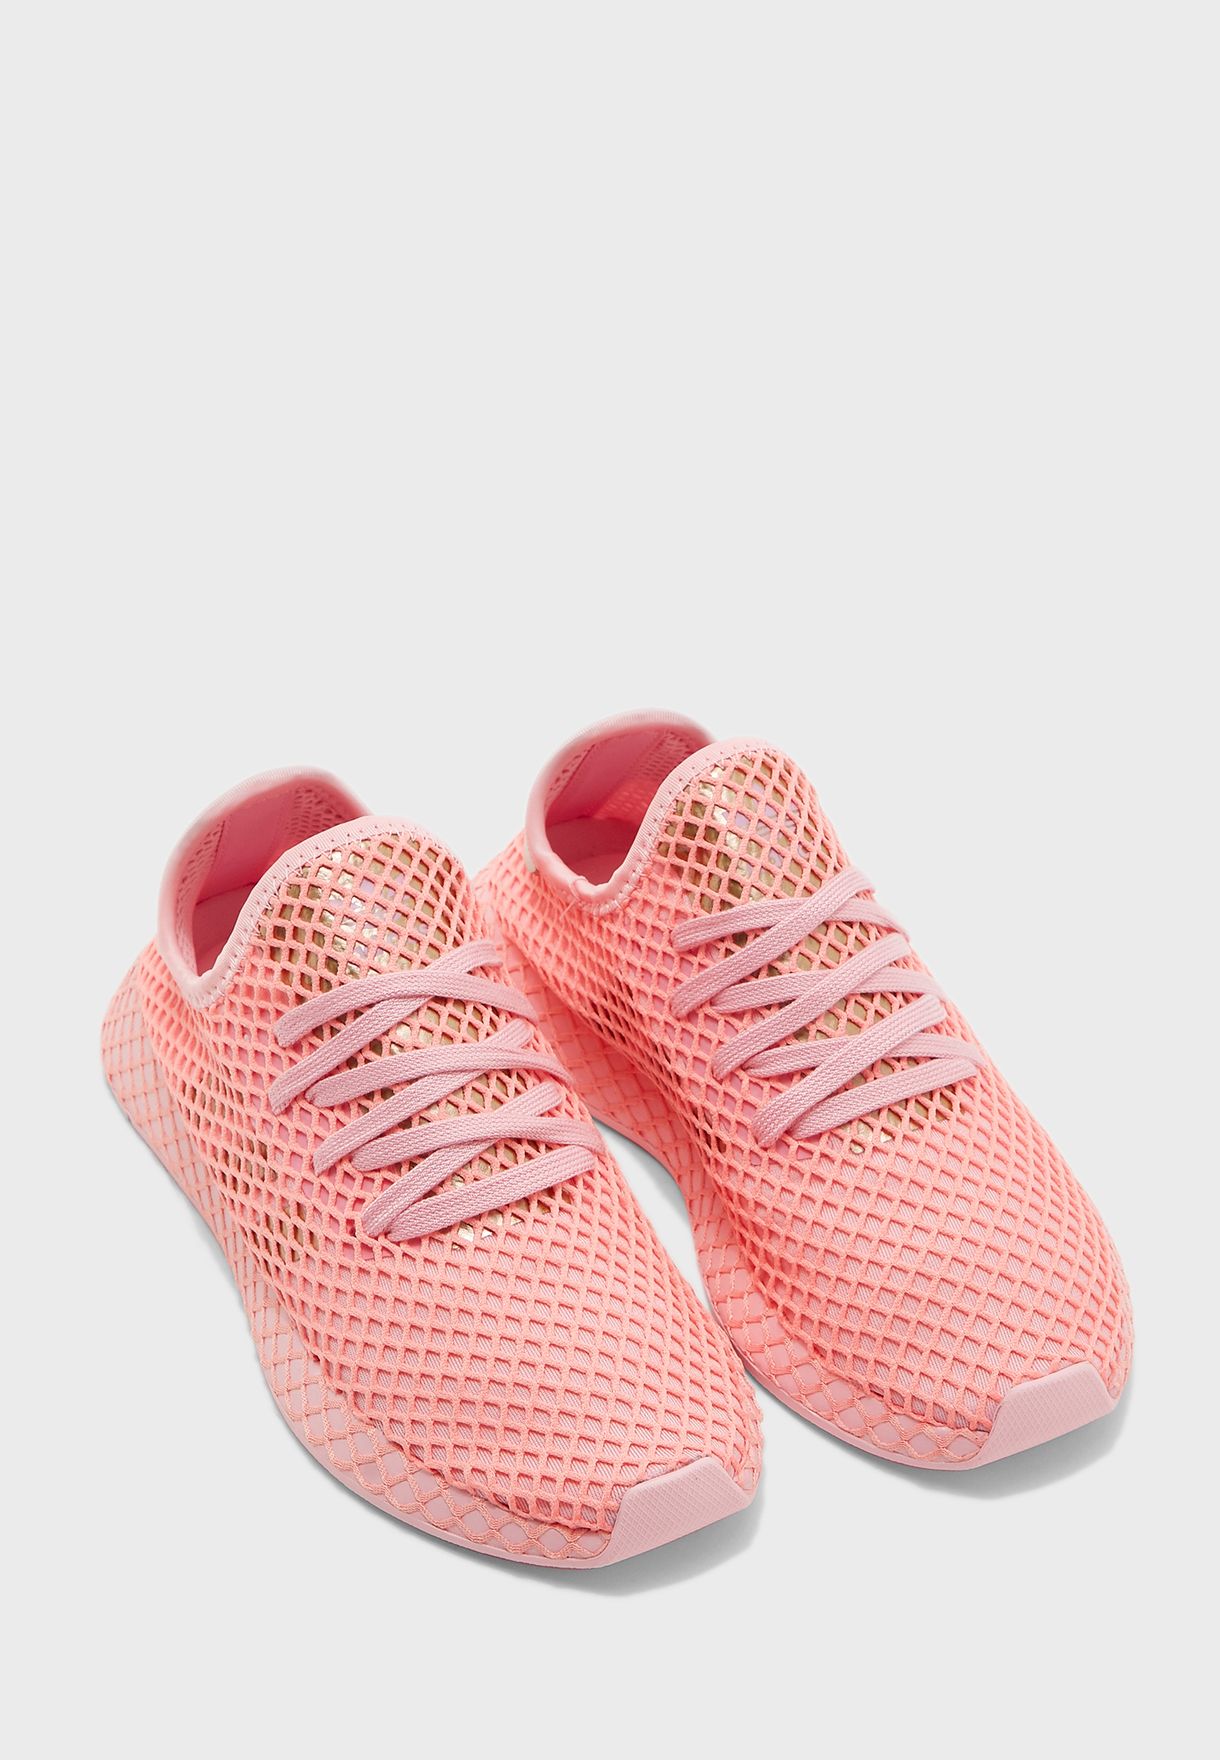 adidas originals deerupt runner in pink